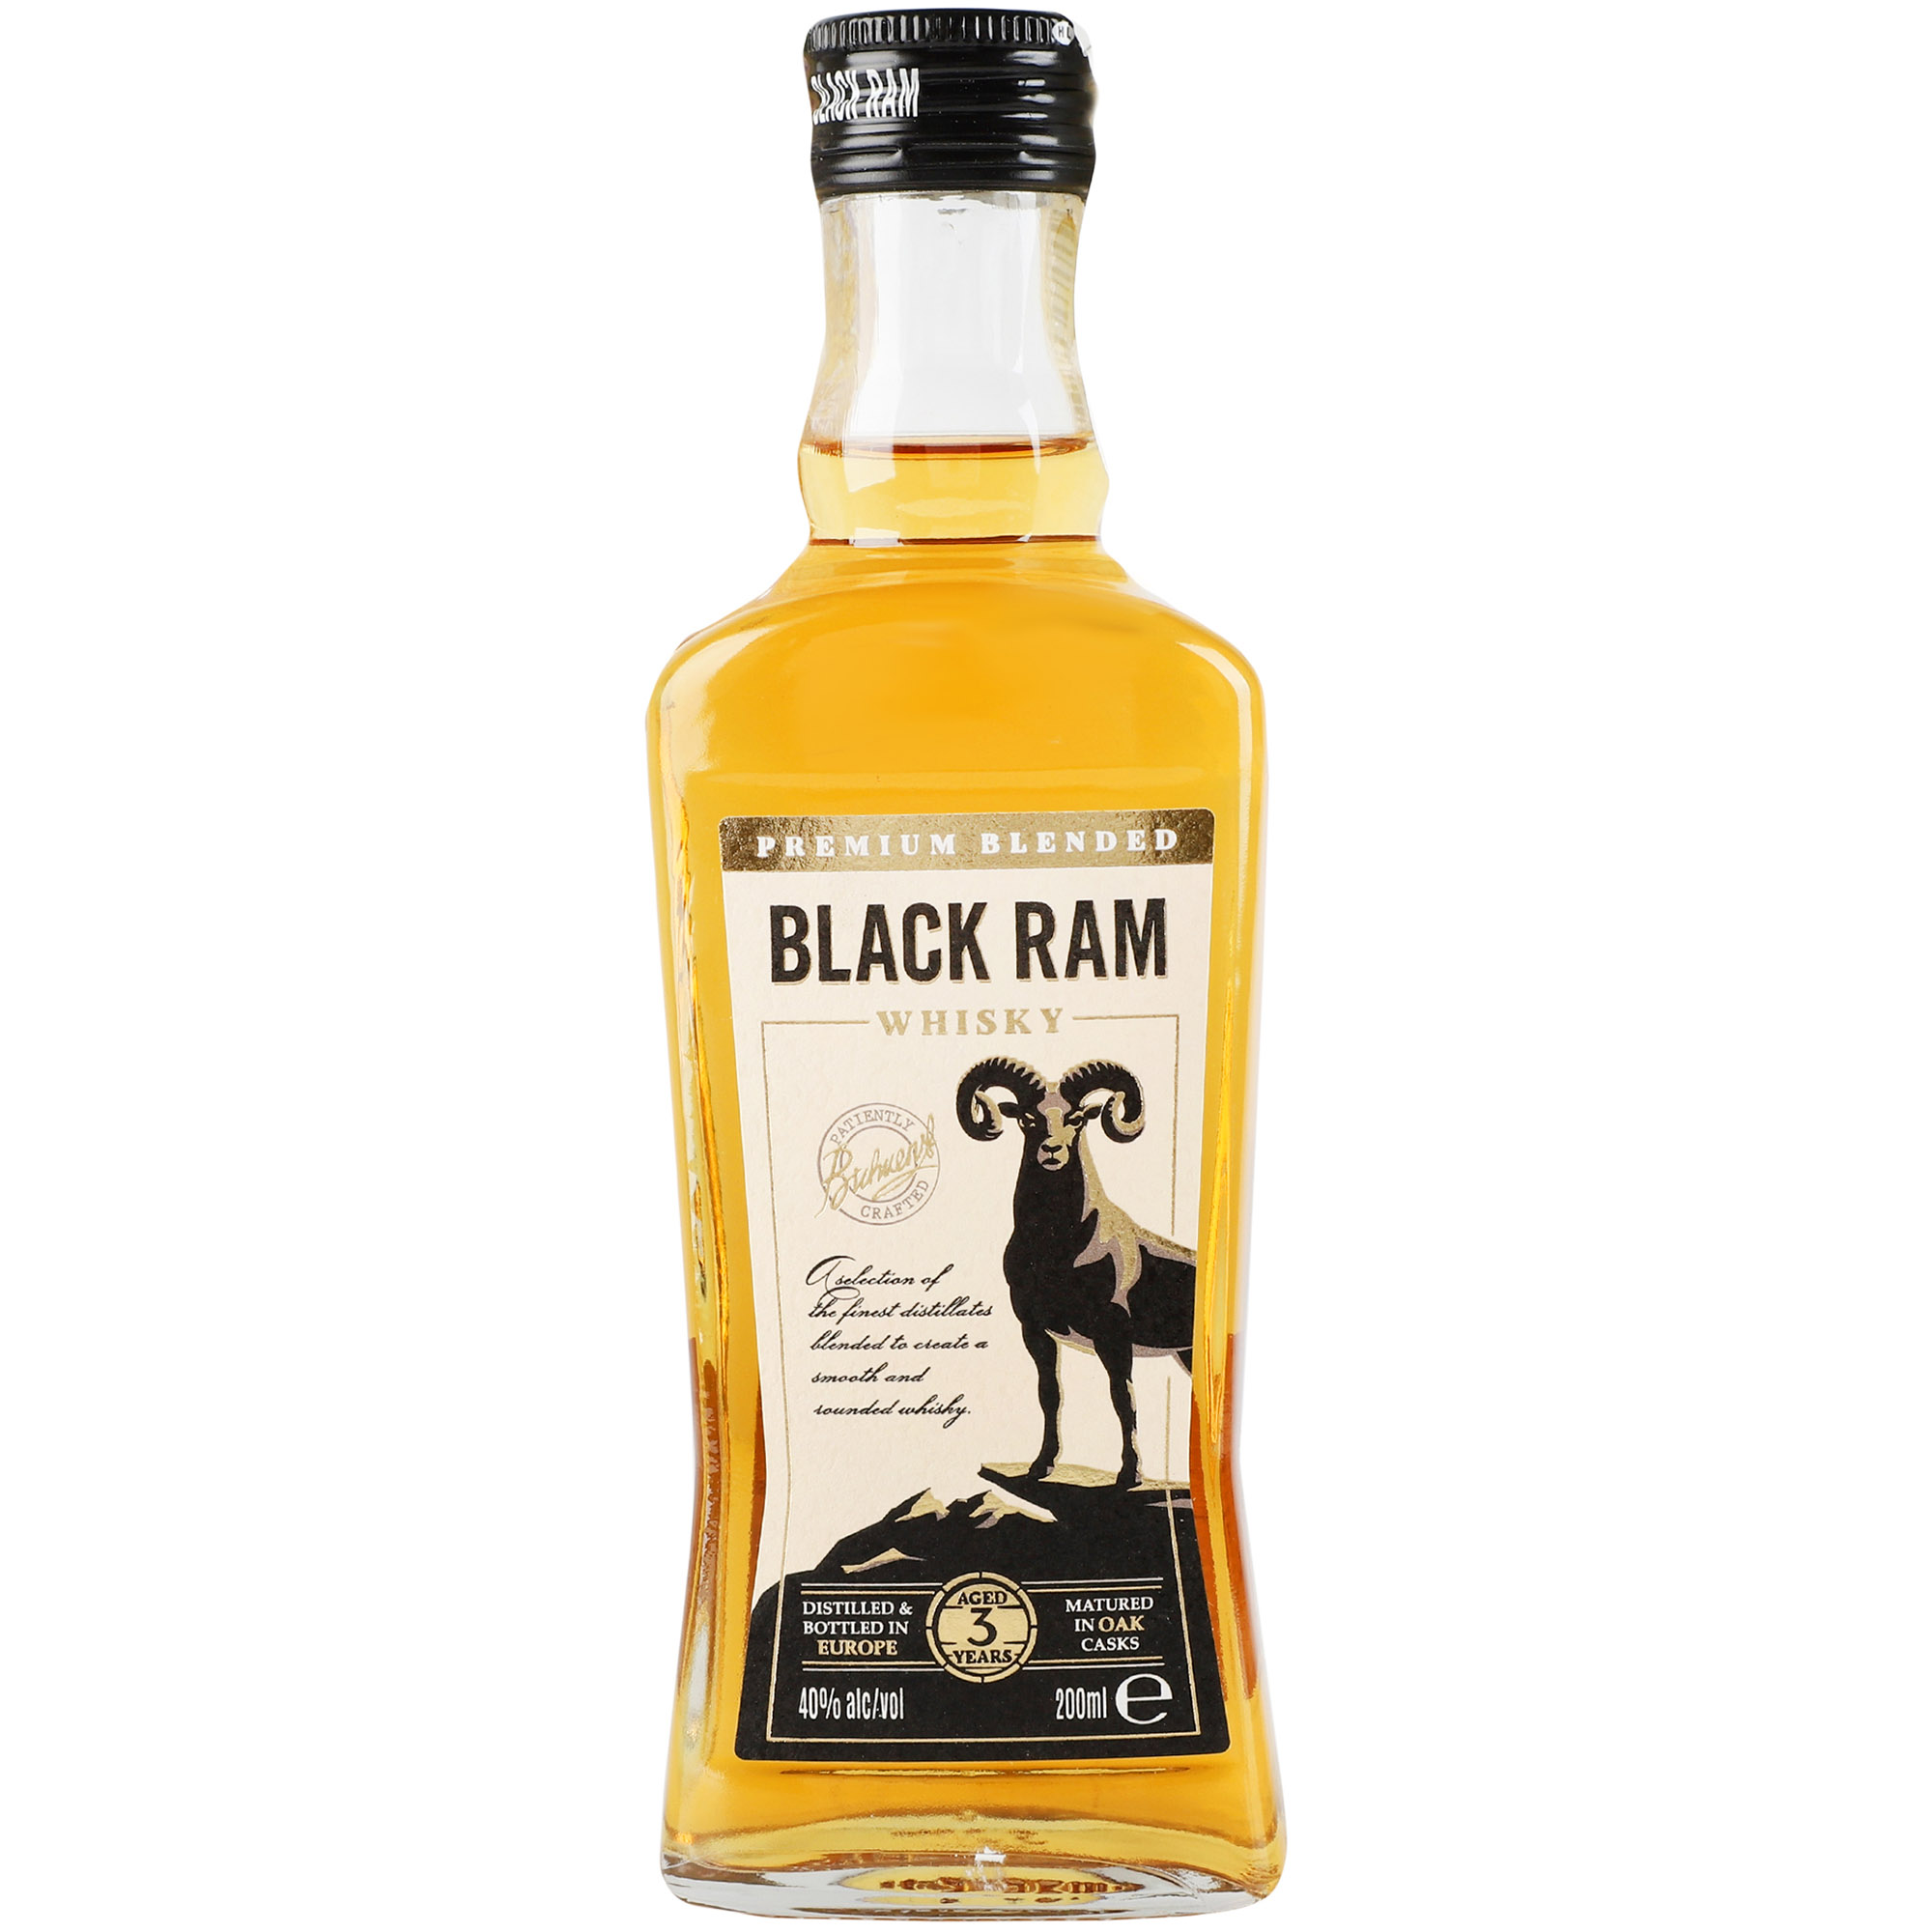 Віскі Black Ram 3 yo Premium Blended Whisky 40% 0.2 л - фото 1